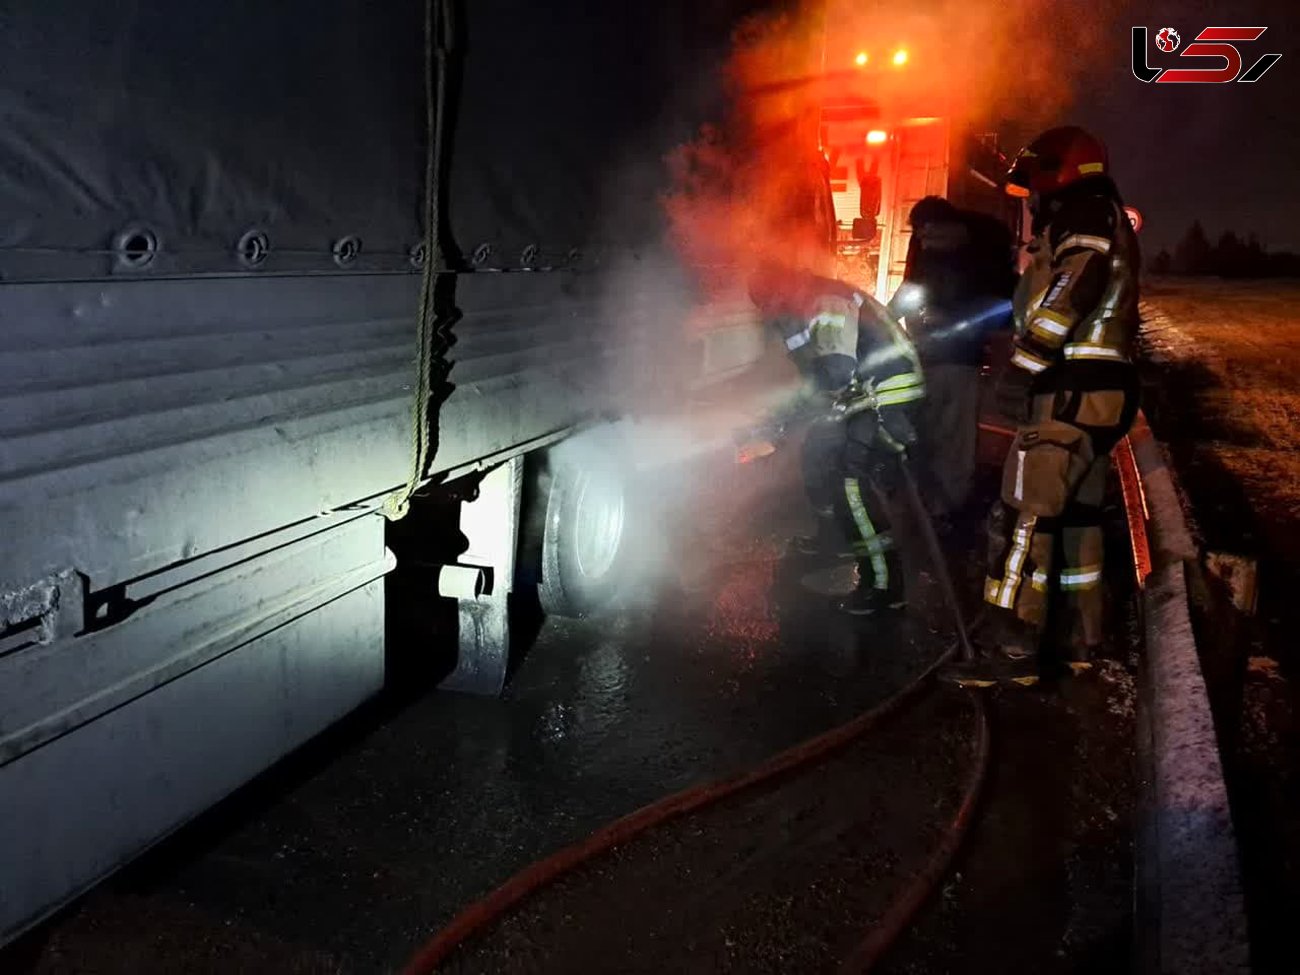 آتش سوزی یک دستگاه کامیون حمل کارتن در اتوبان قزوین